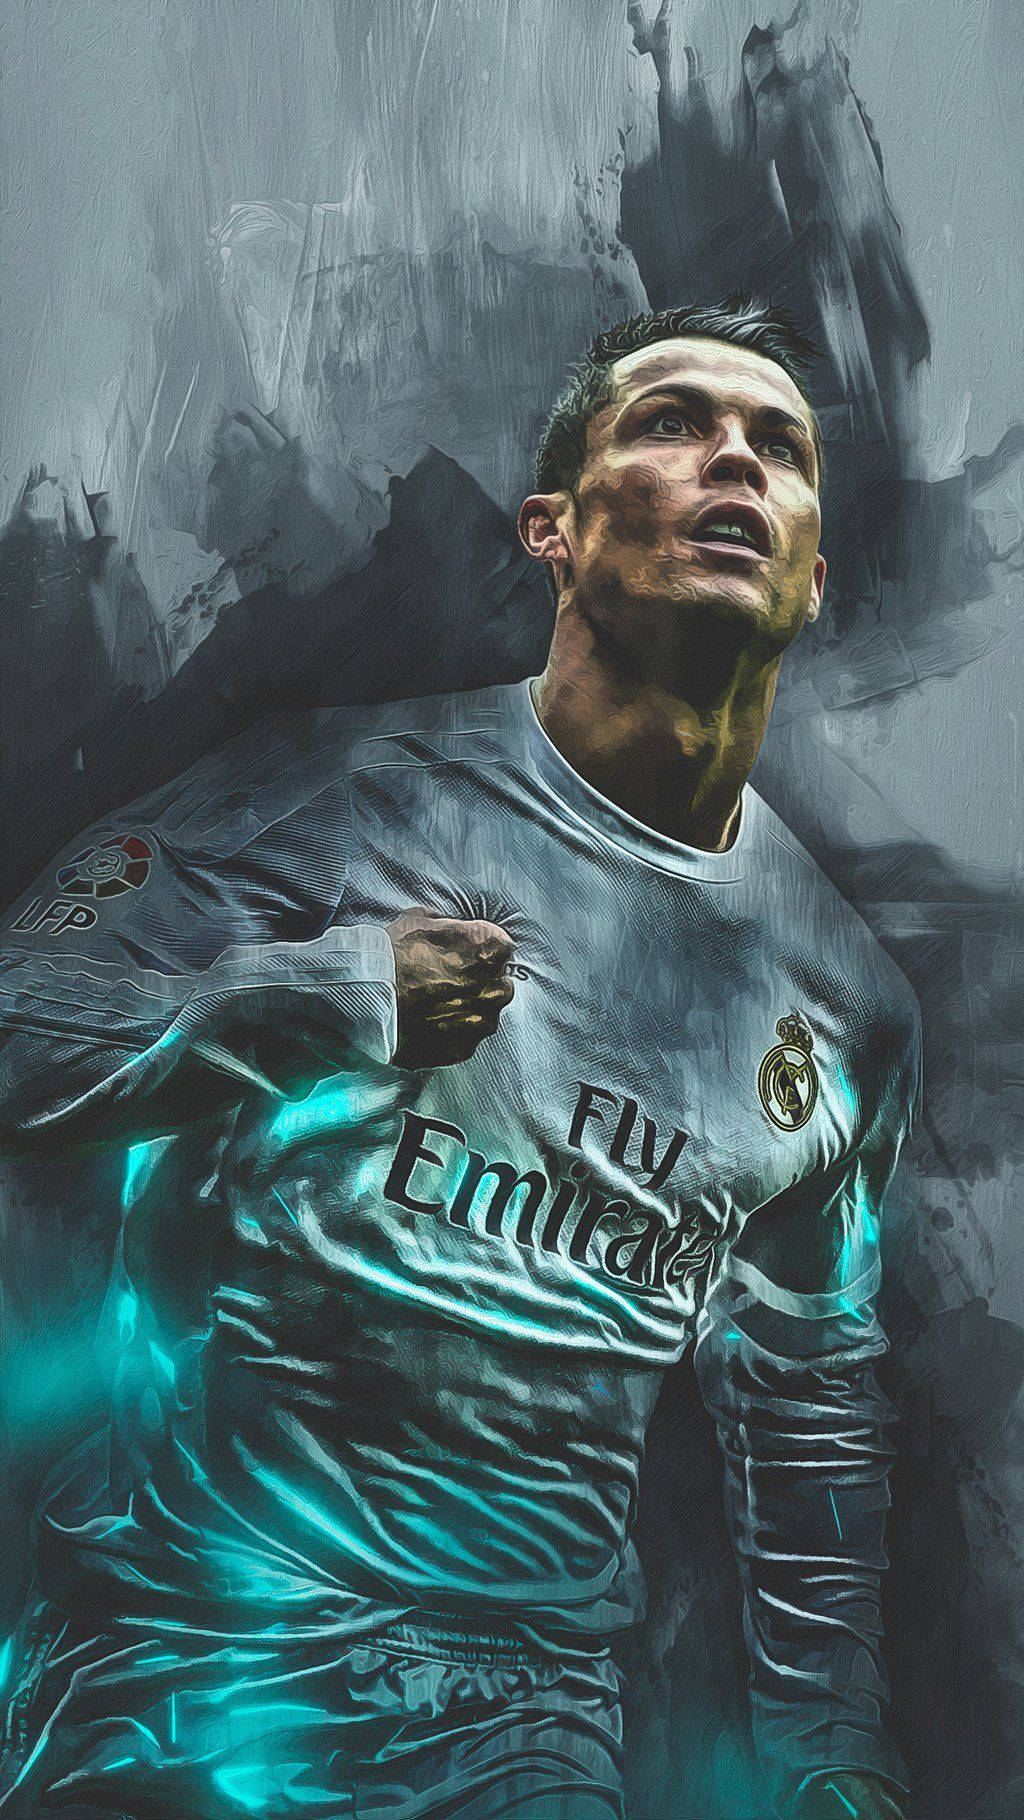 Cristiano Ronaldo, Soccer Legend from Portugal Wallpaper